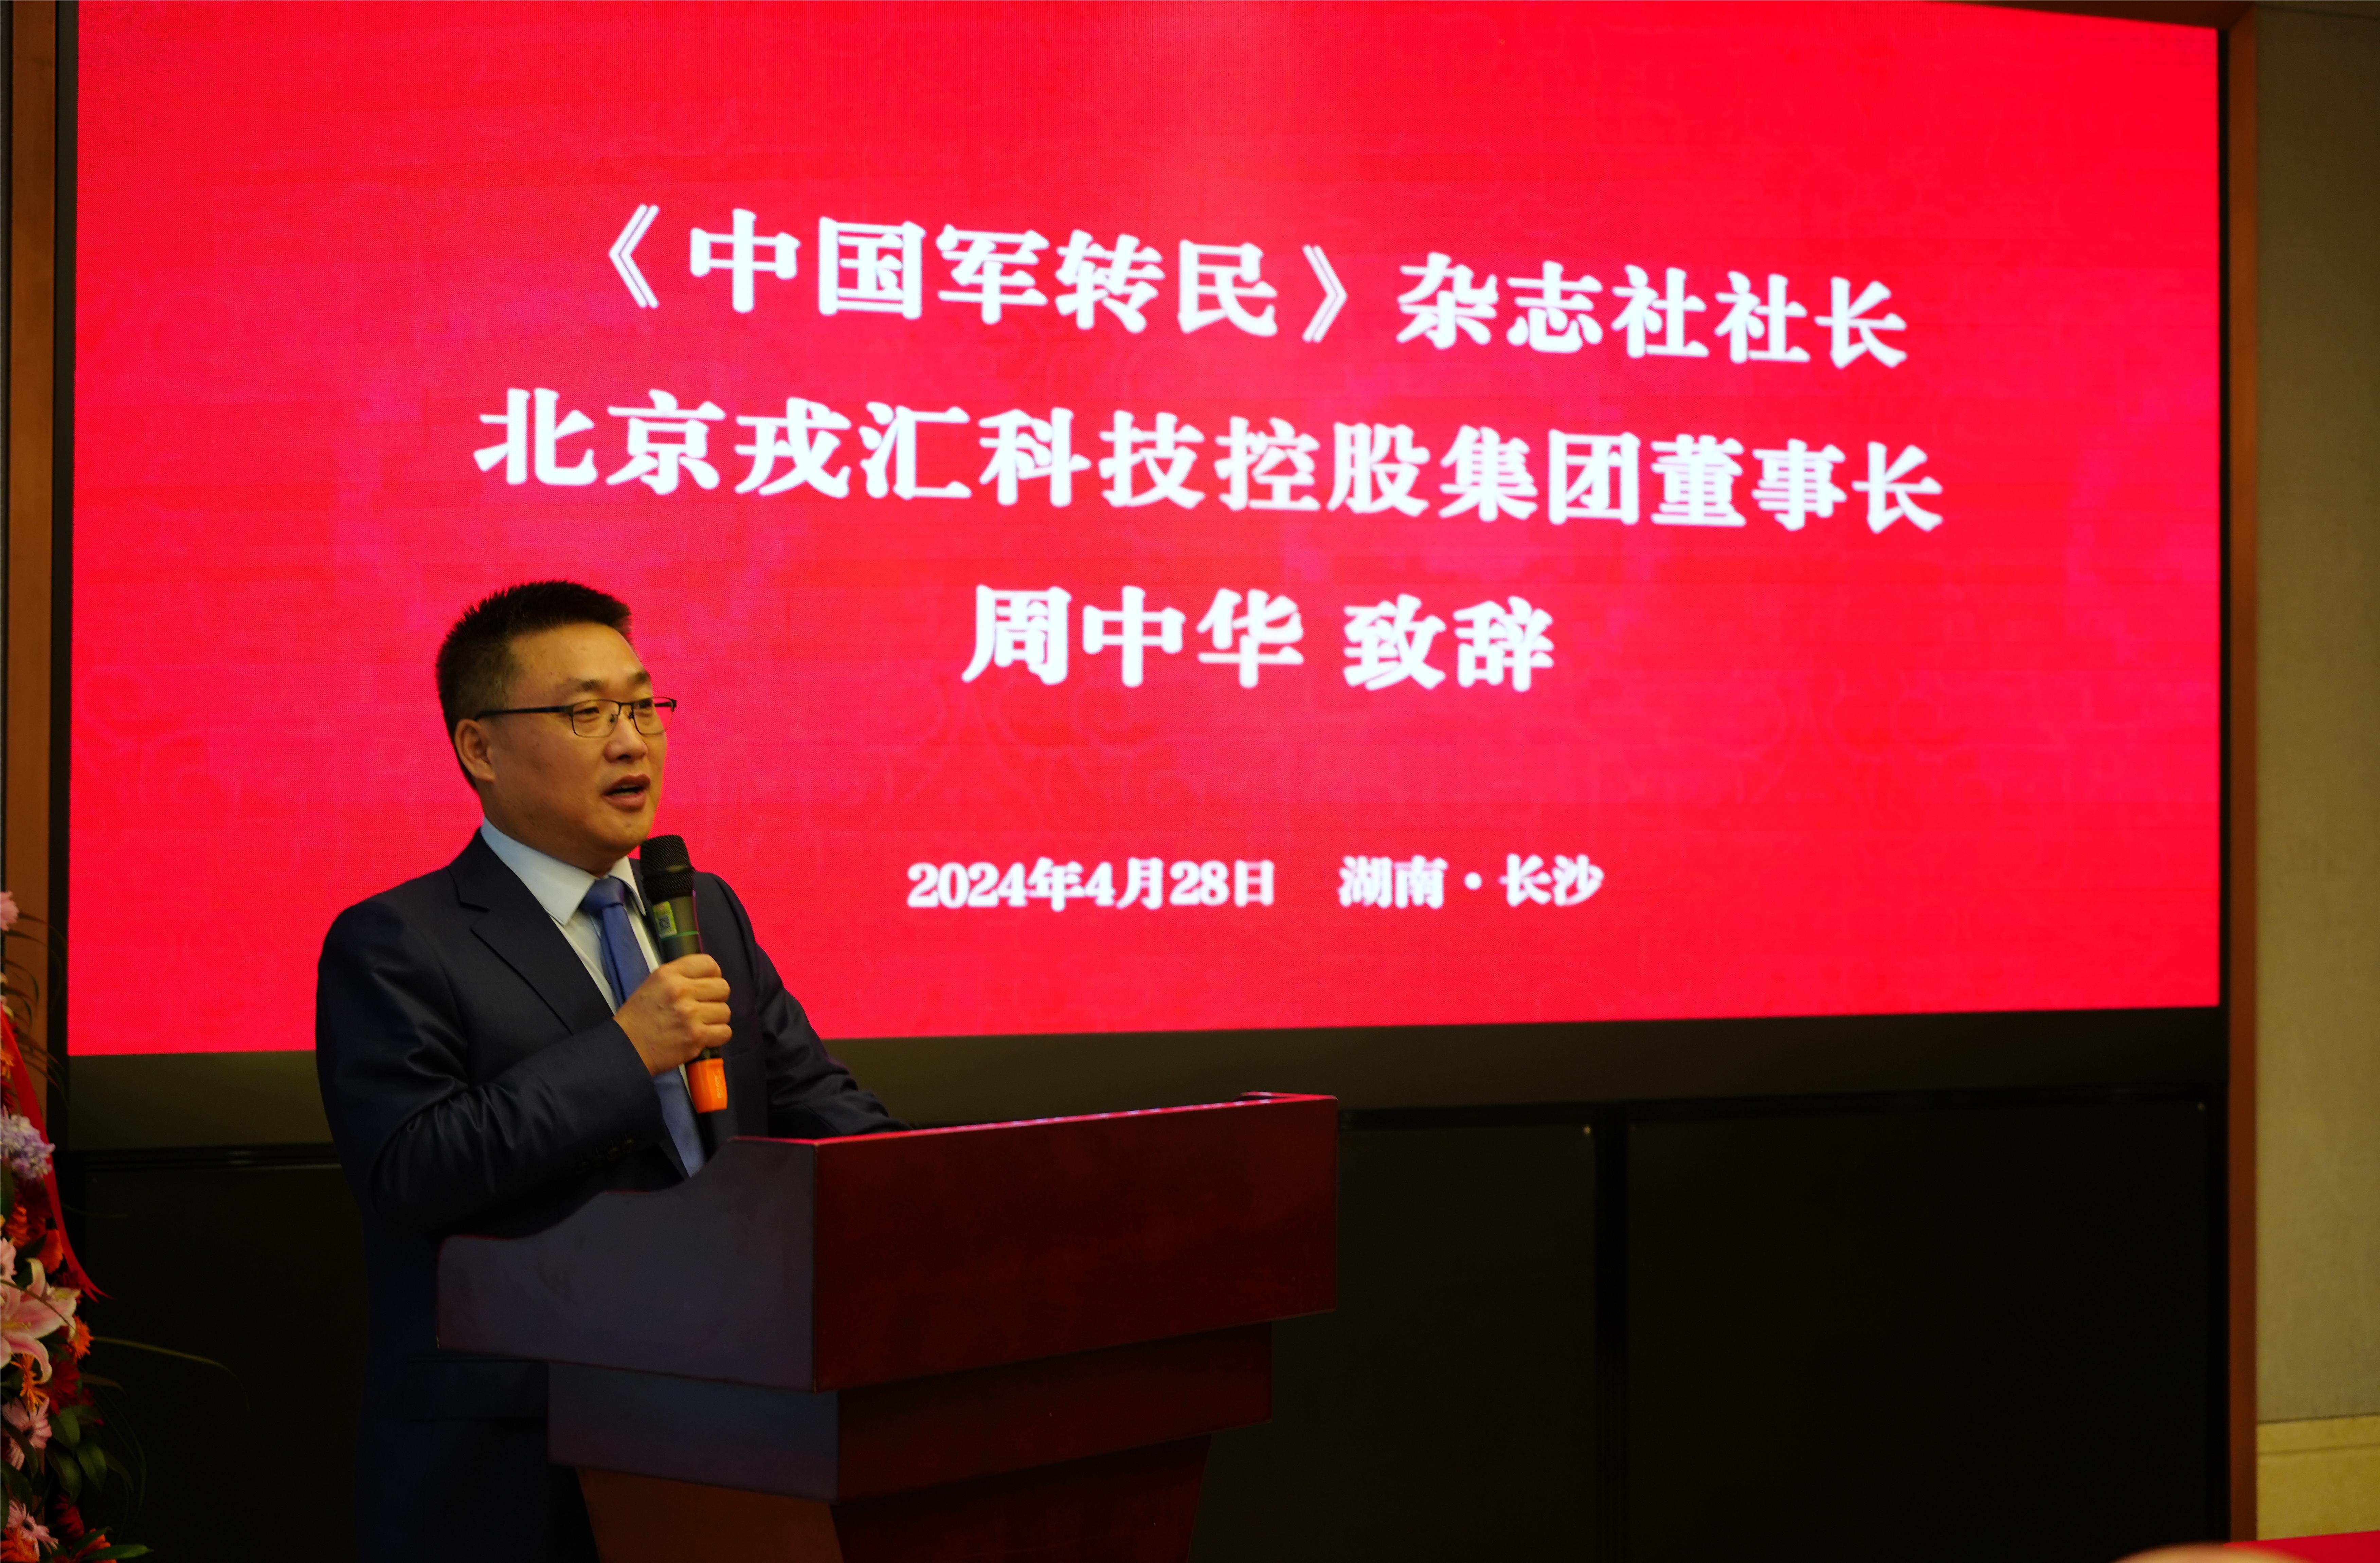 《中国军转民》军民融合创新研究院 北京戎汇科技控股集团湖南分公司揭牌仪式顺利举行